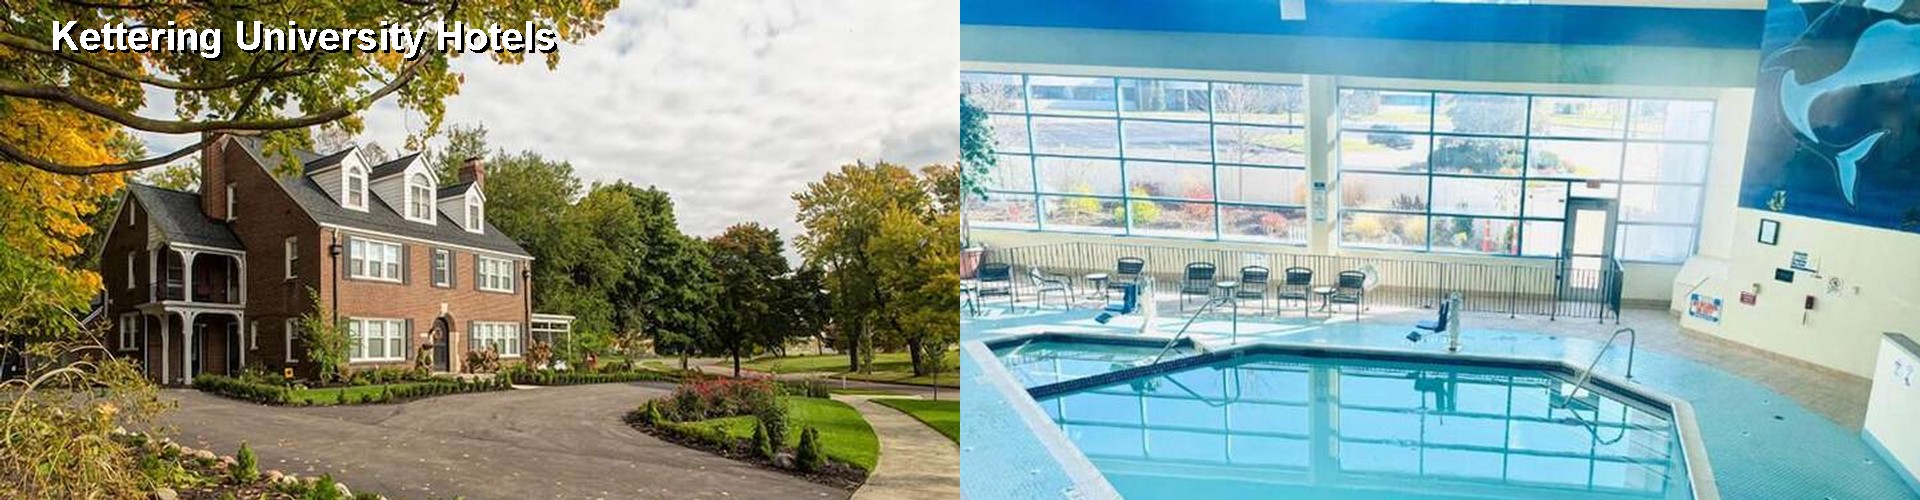 1 Best Hotels near Kettering University